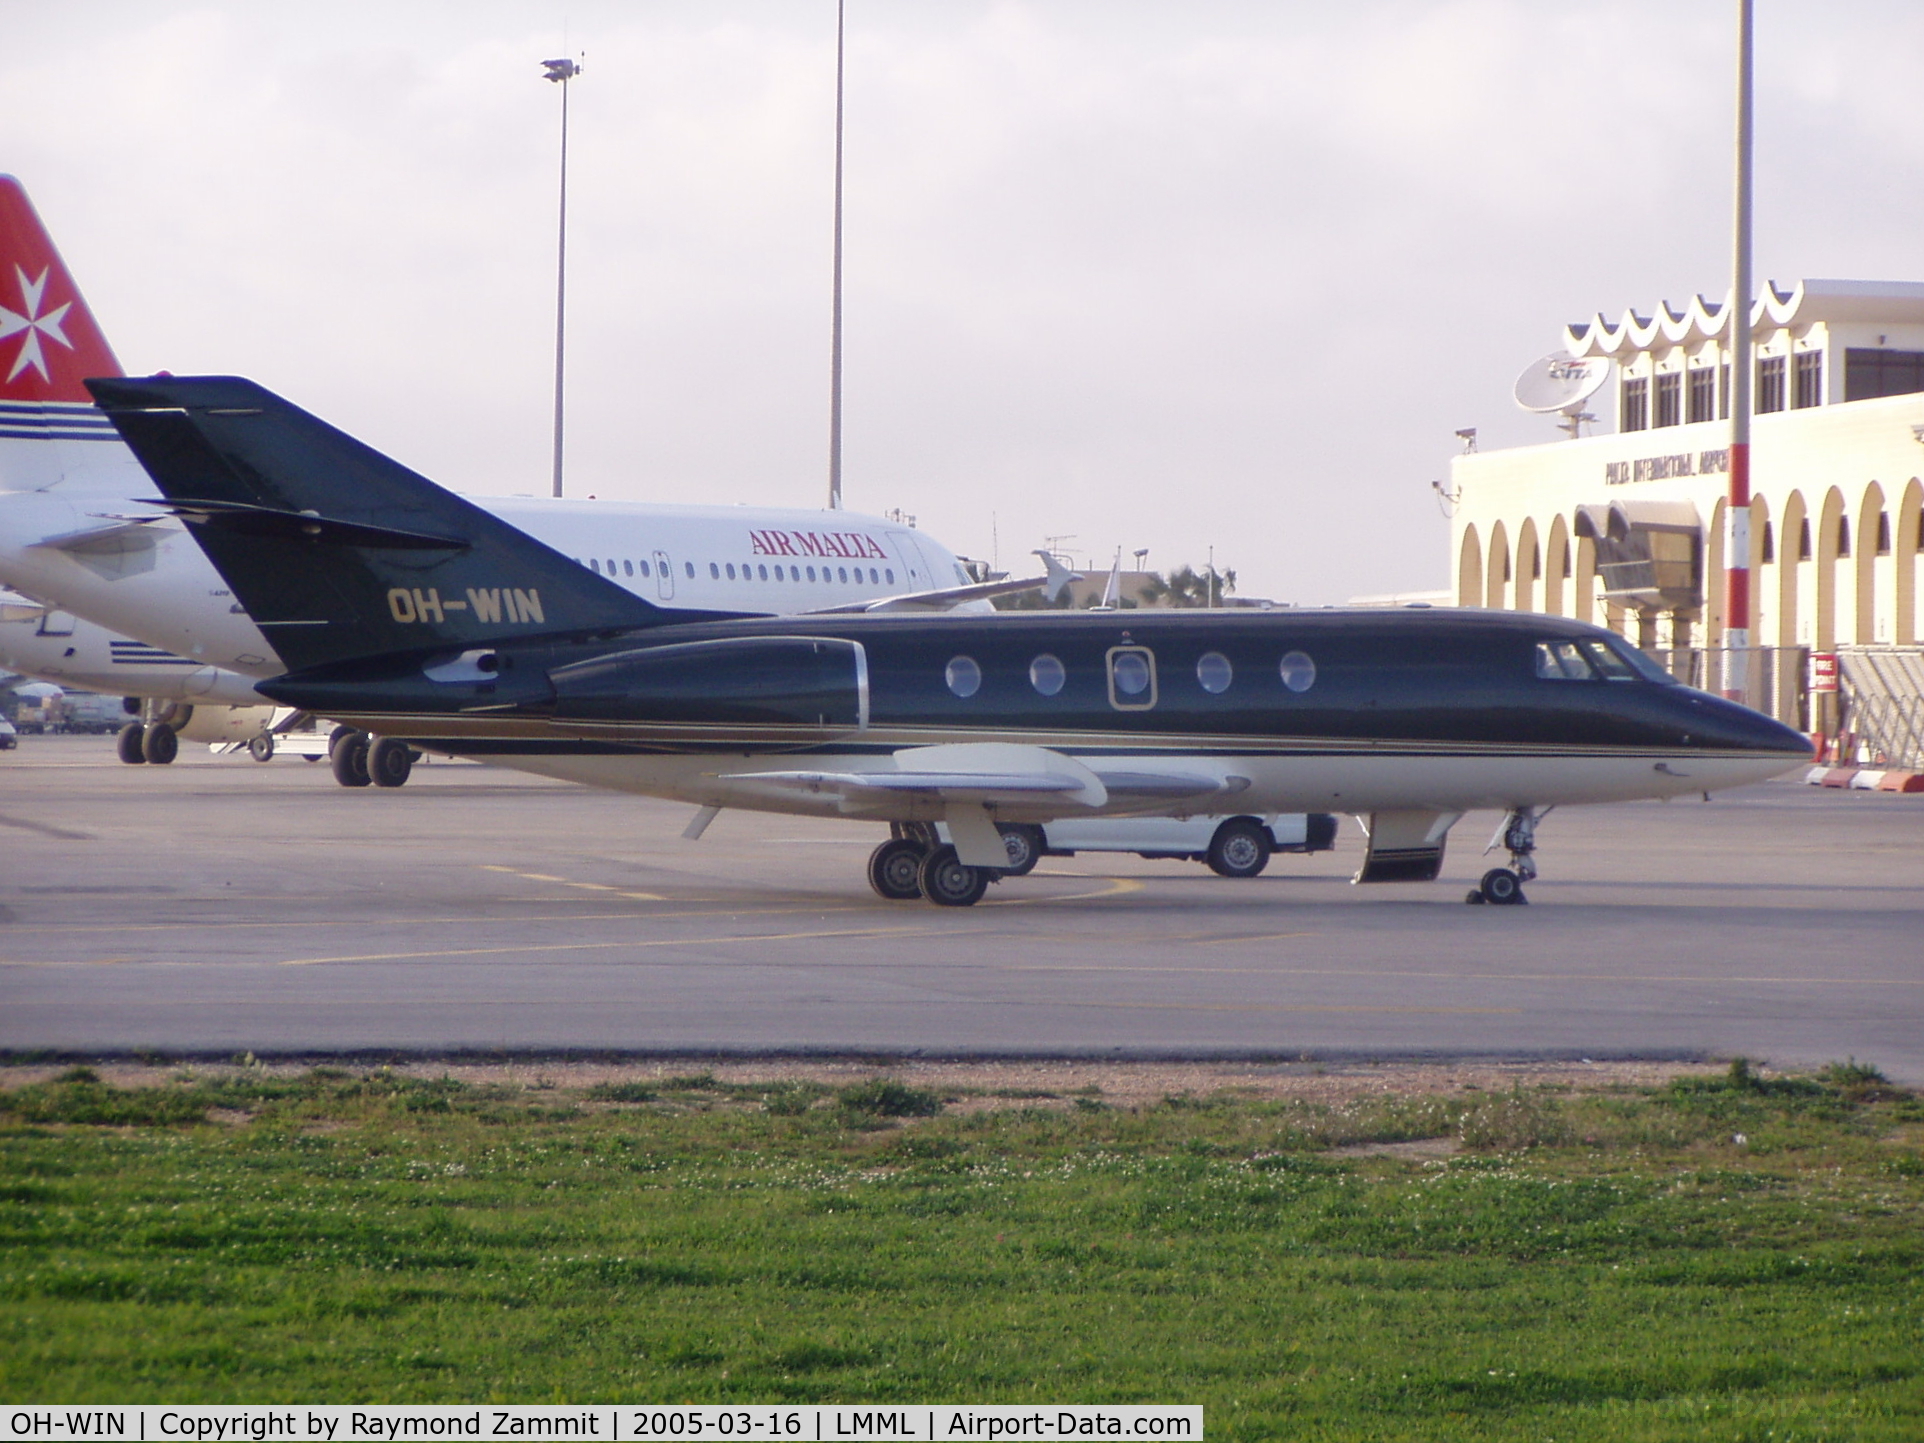 OH-WIN, 1989 Dassault Falcon (Mystere) 20F-5 C/N 481, Dassault Falcon OH-WIN